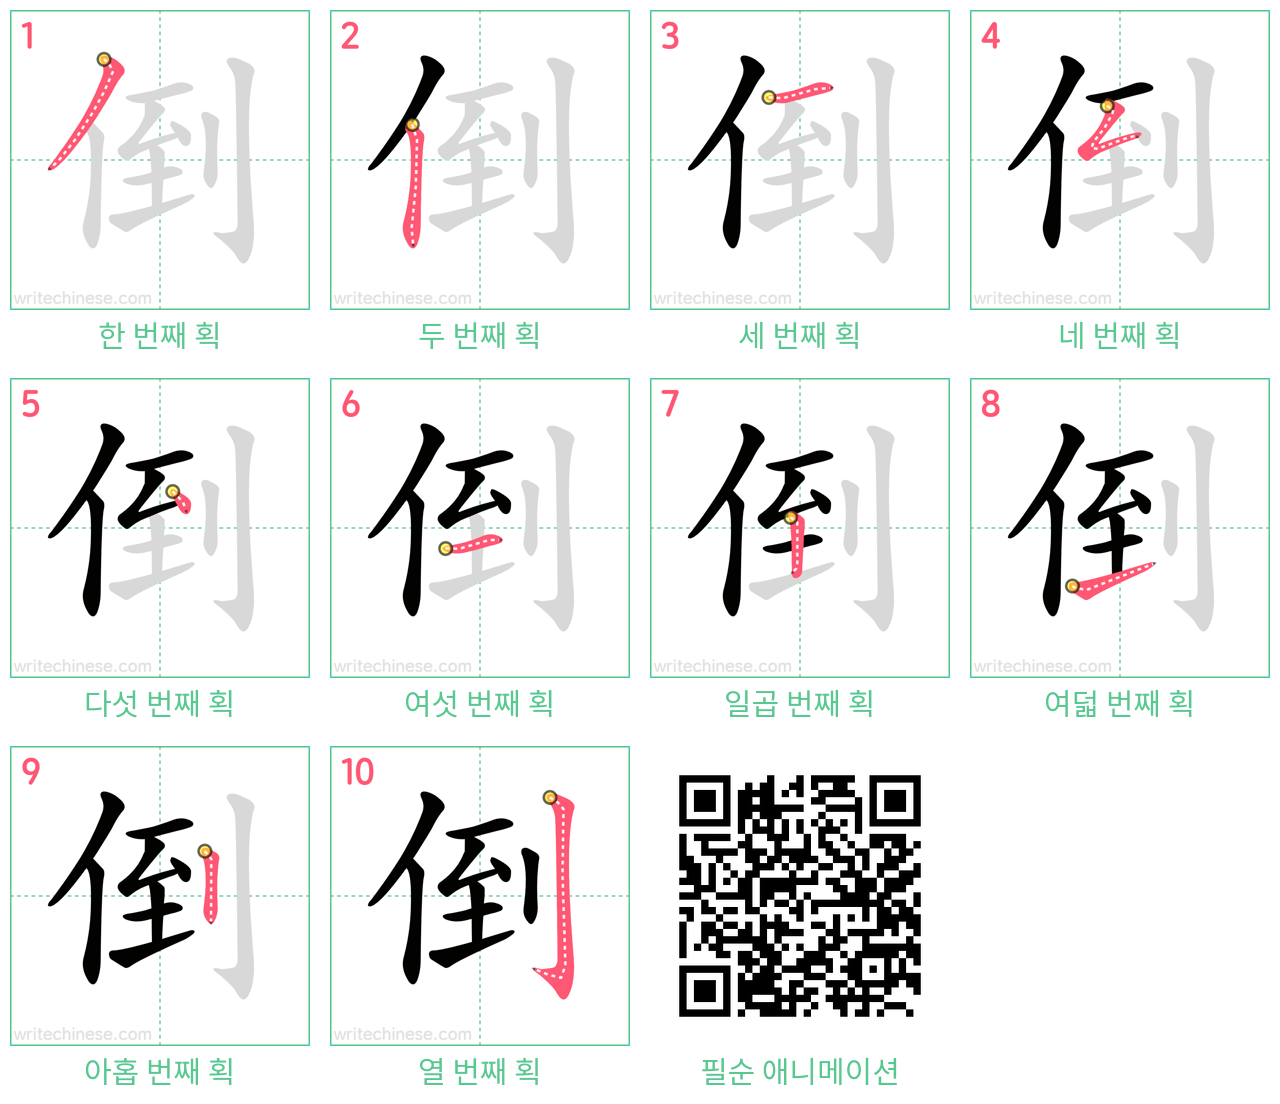 倒 step-by-step stroke order diagrams